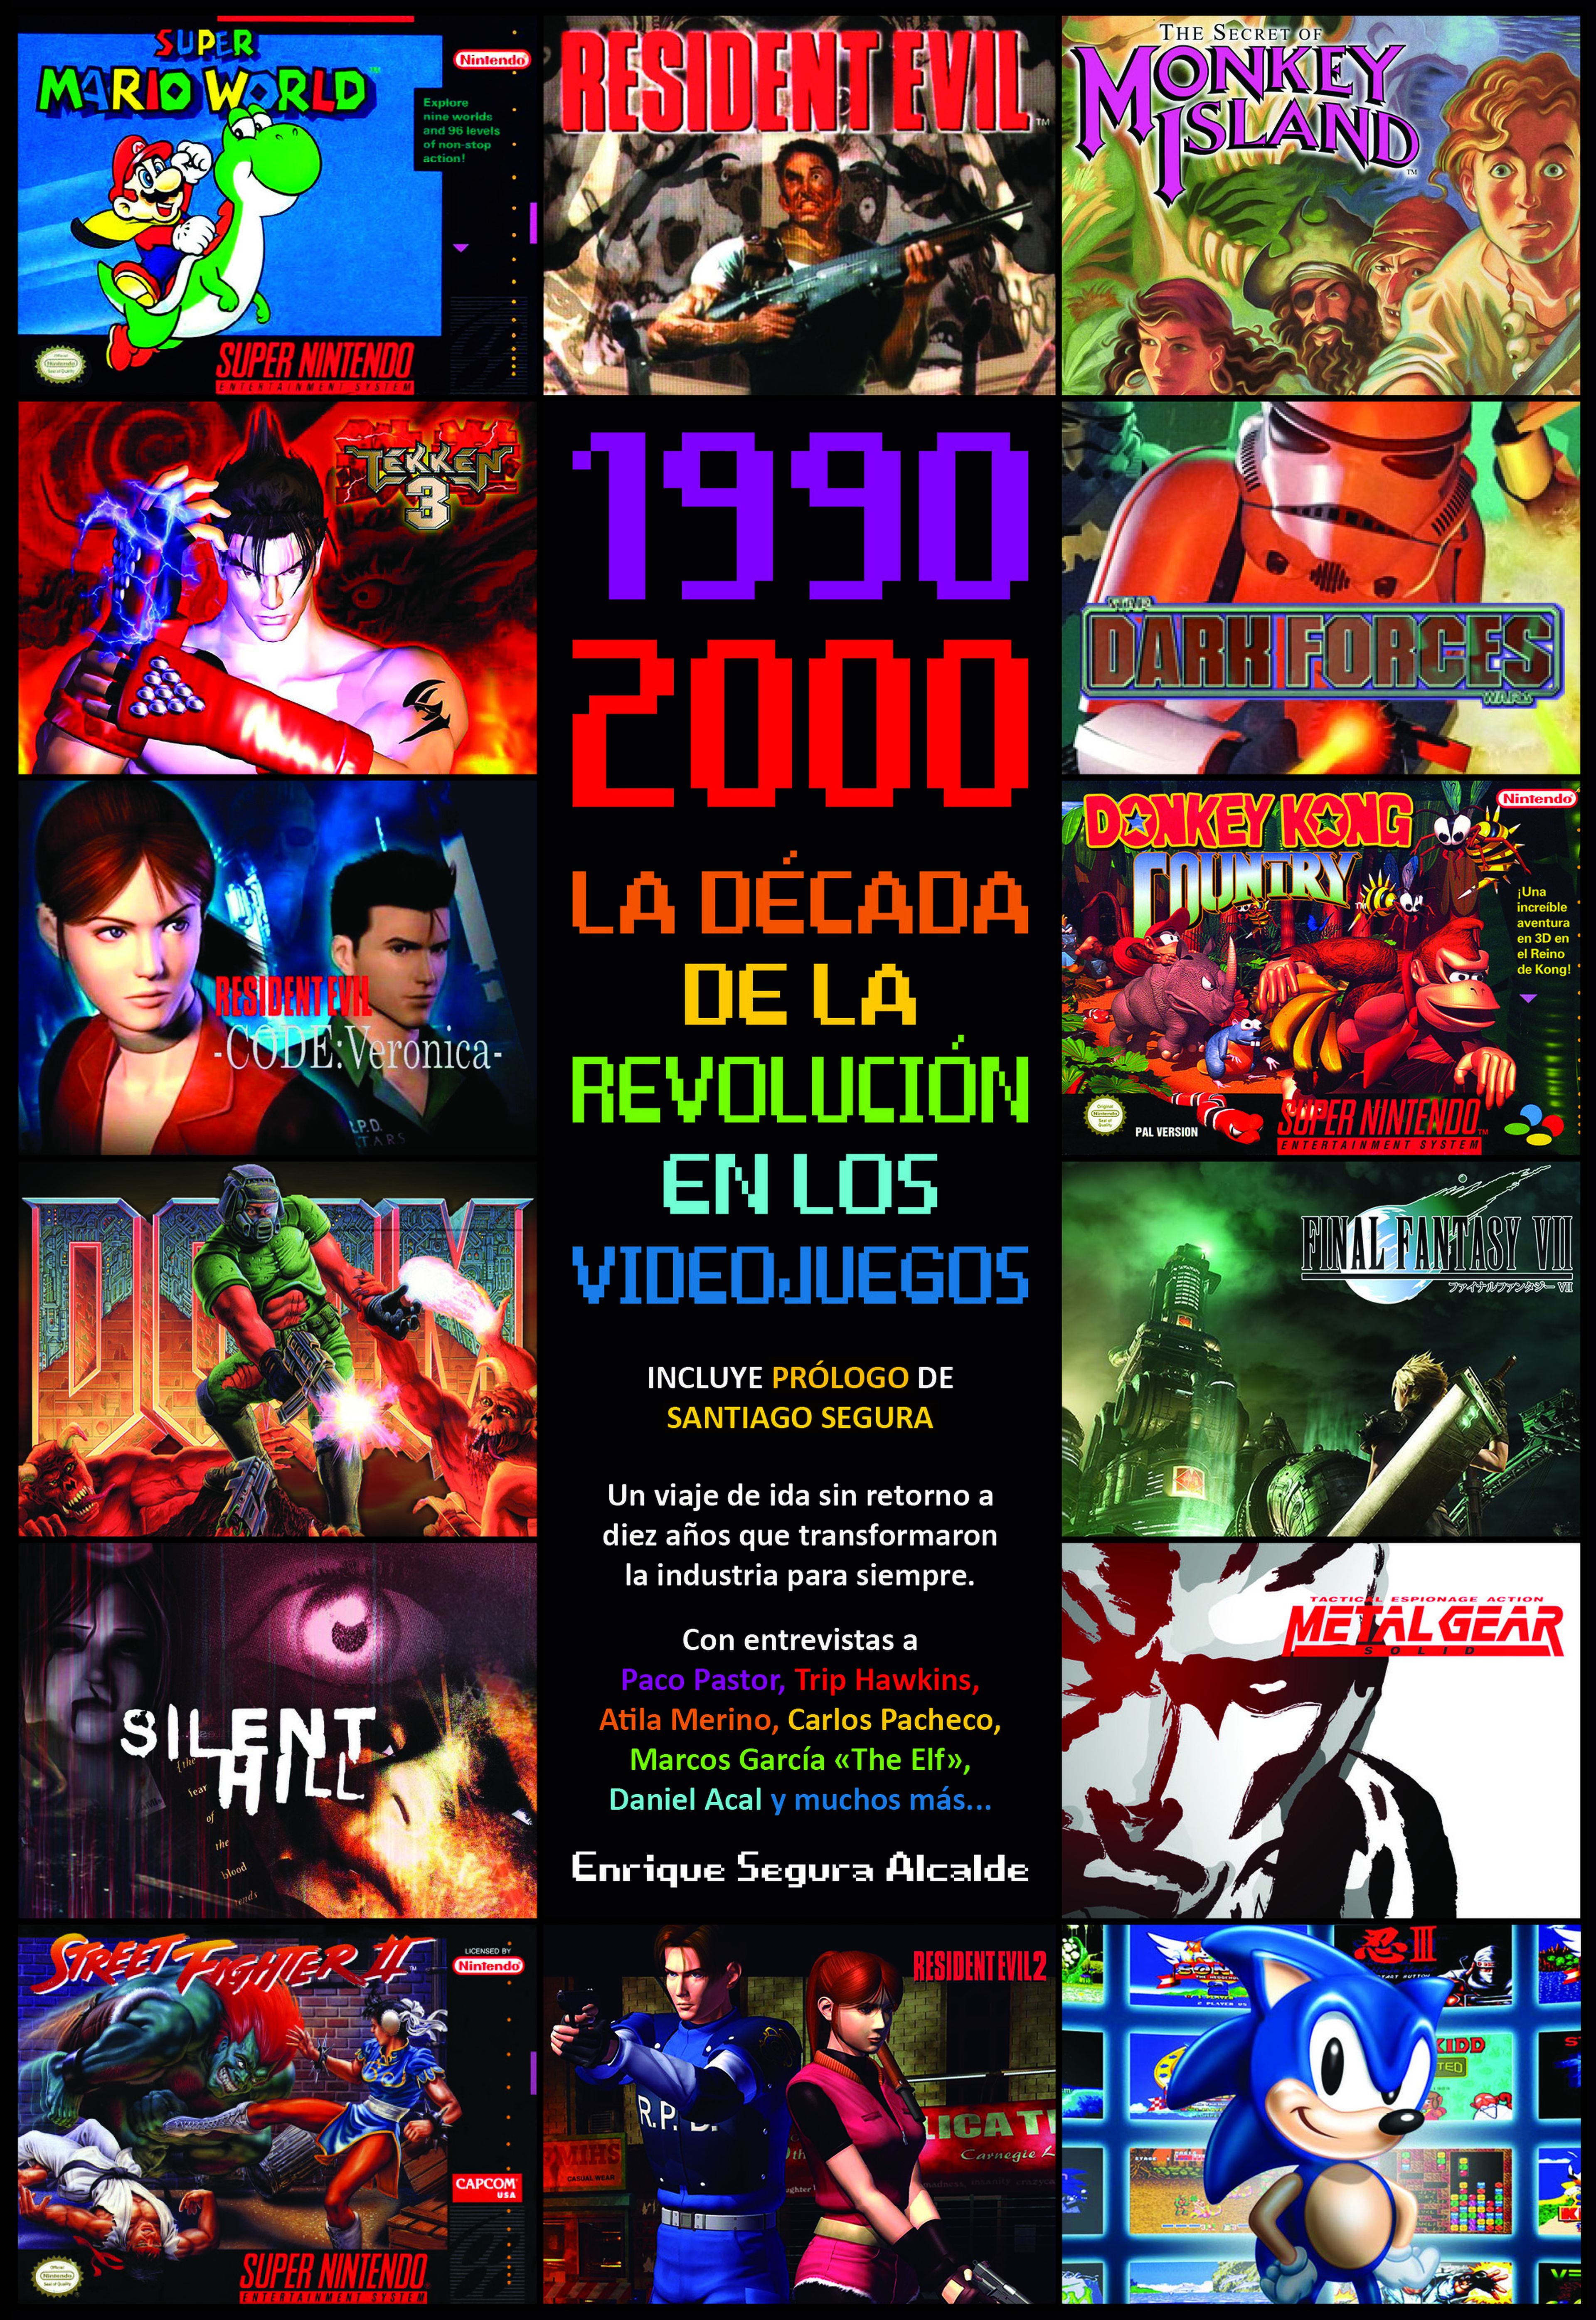 1990-2000, La década de la revolución en los videojuegos